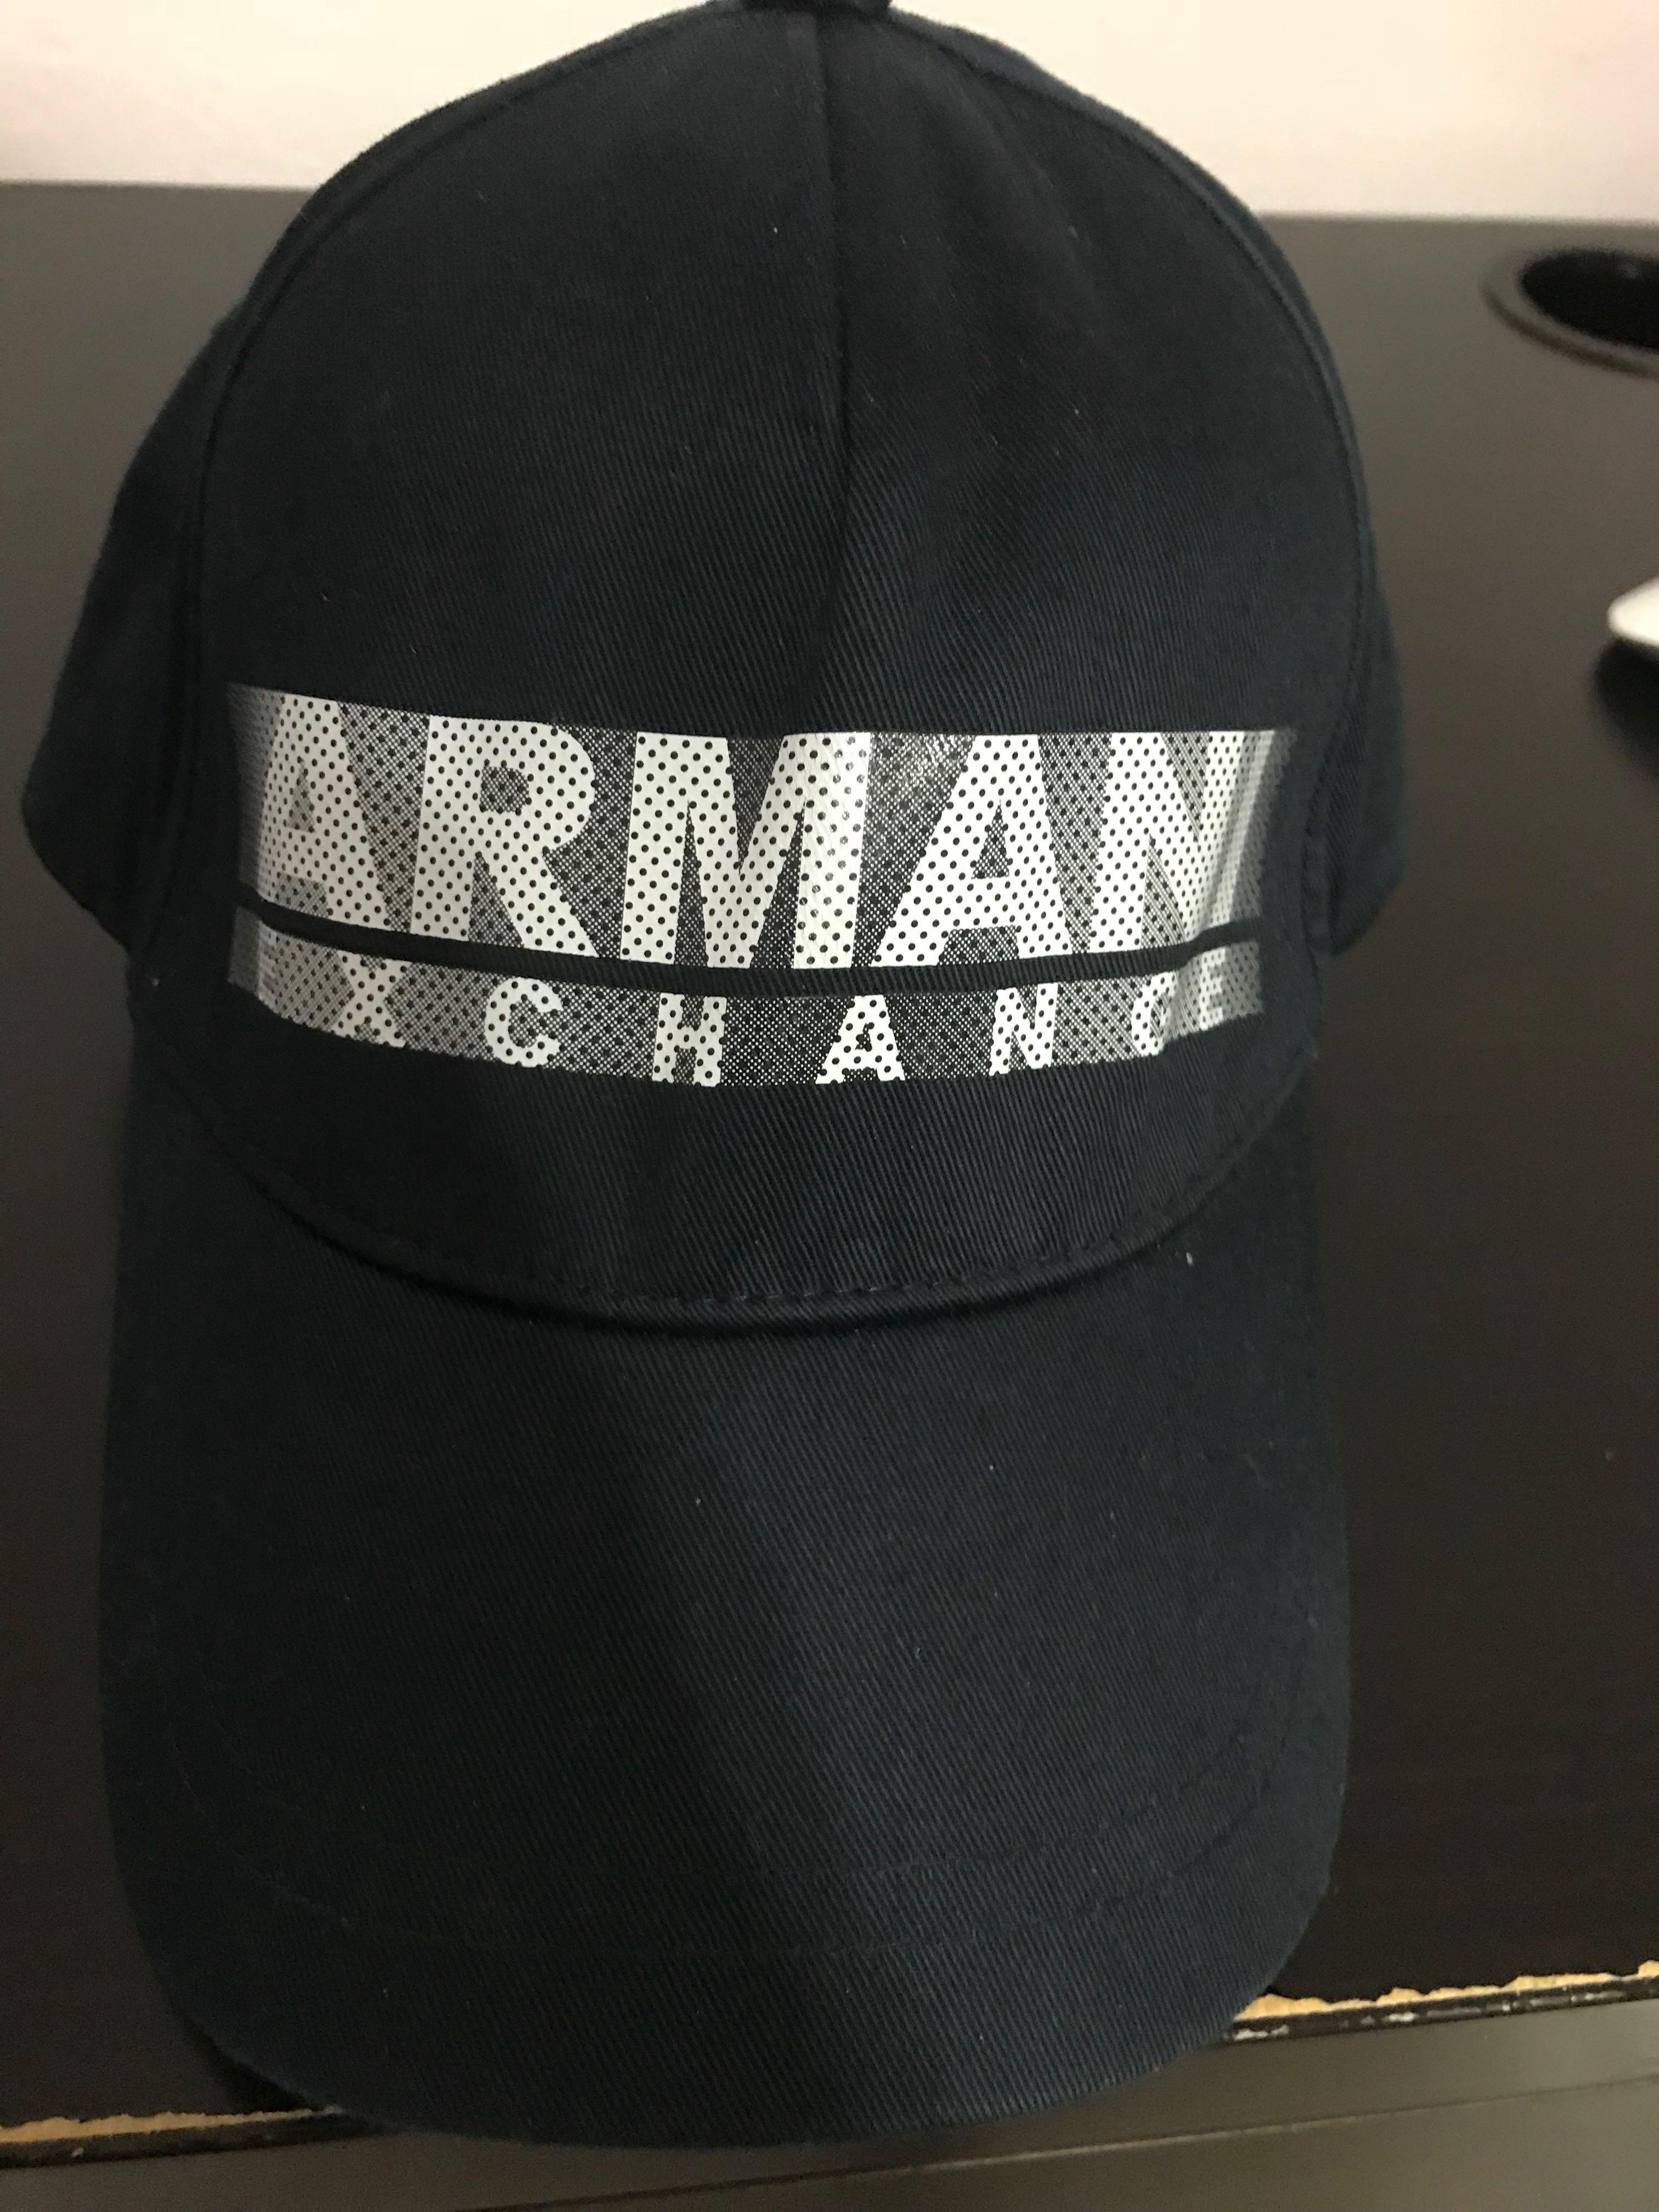 armani exchange cap price